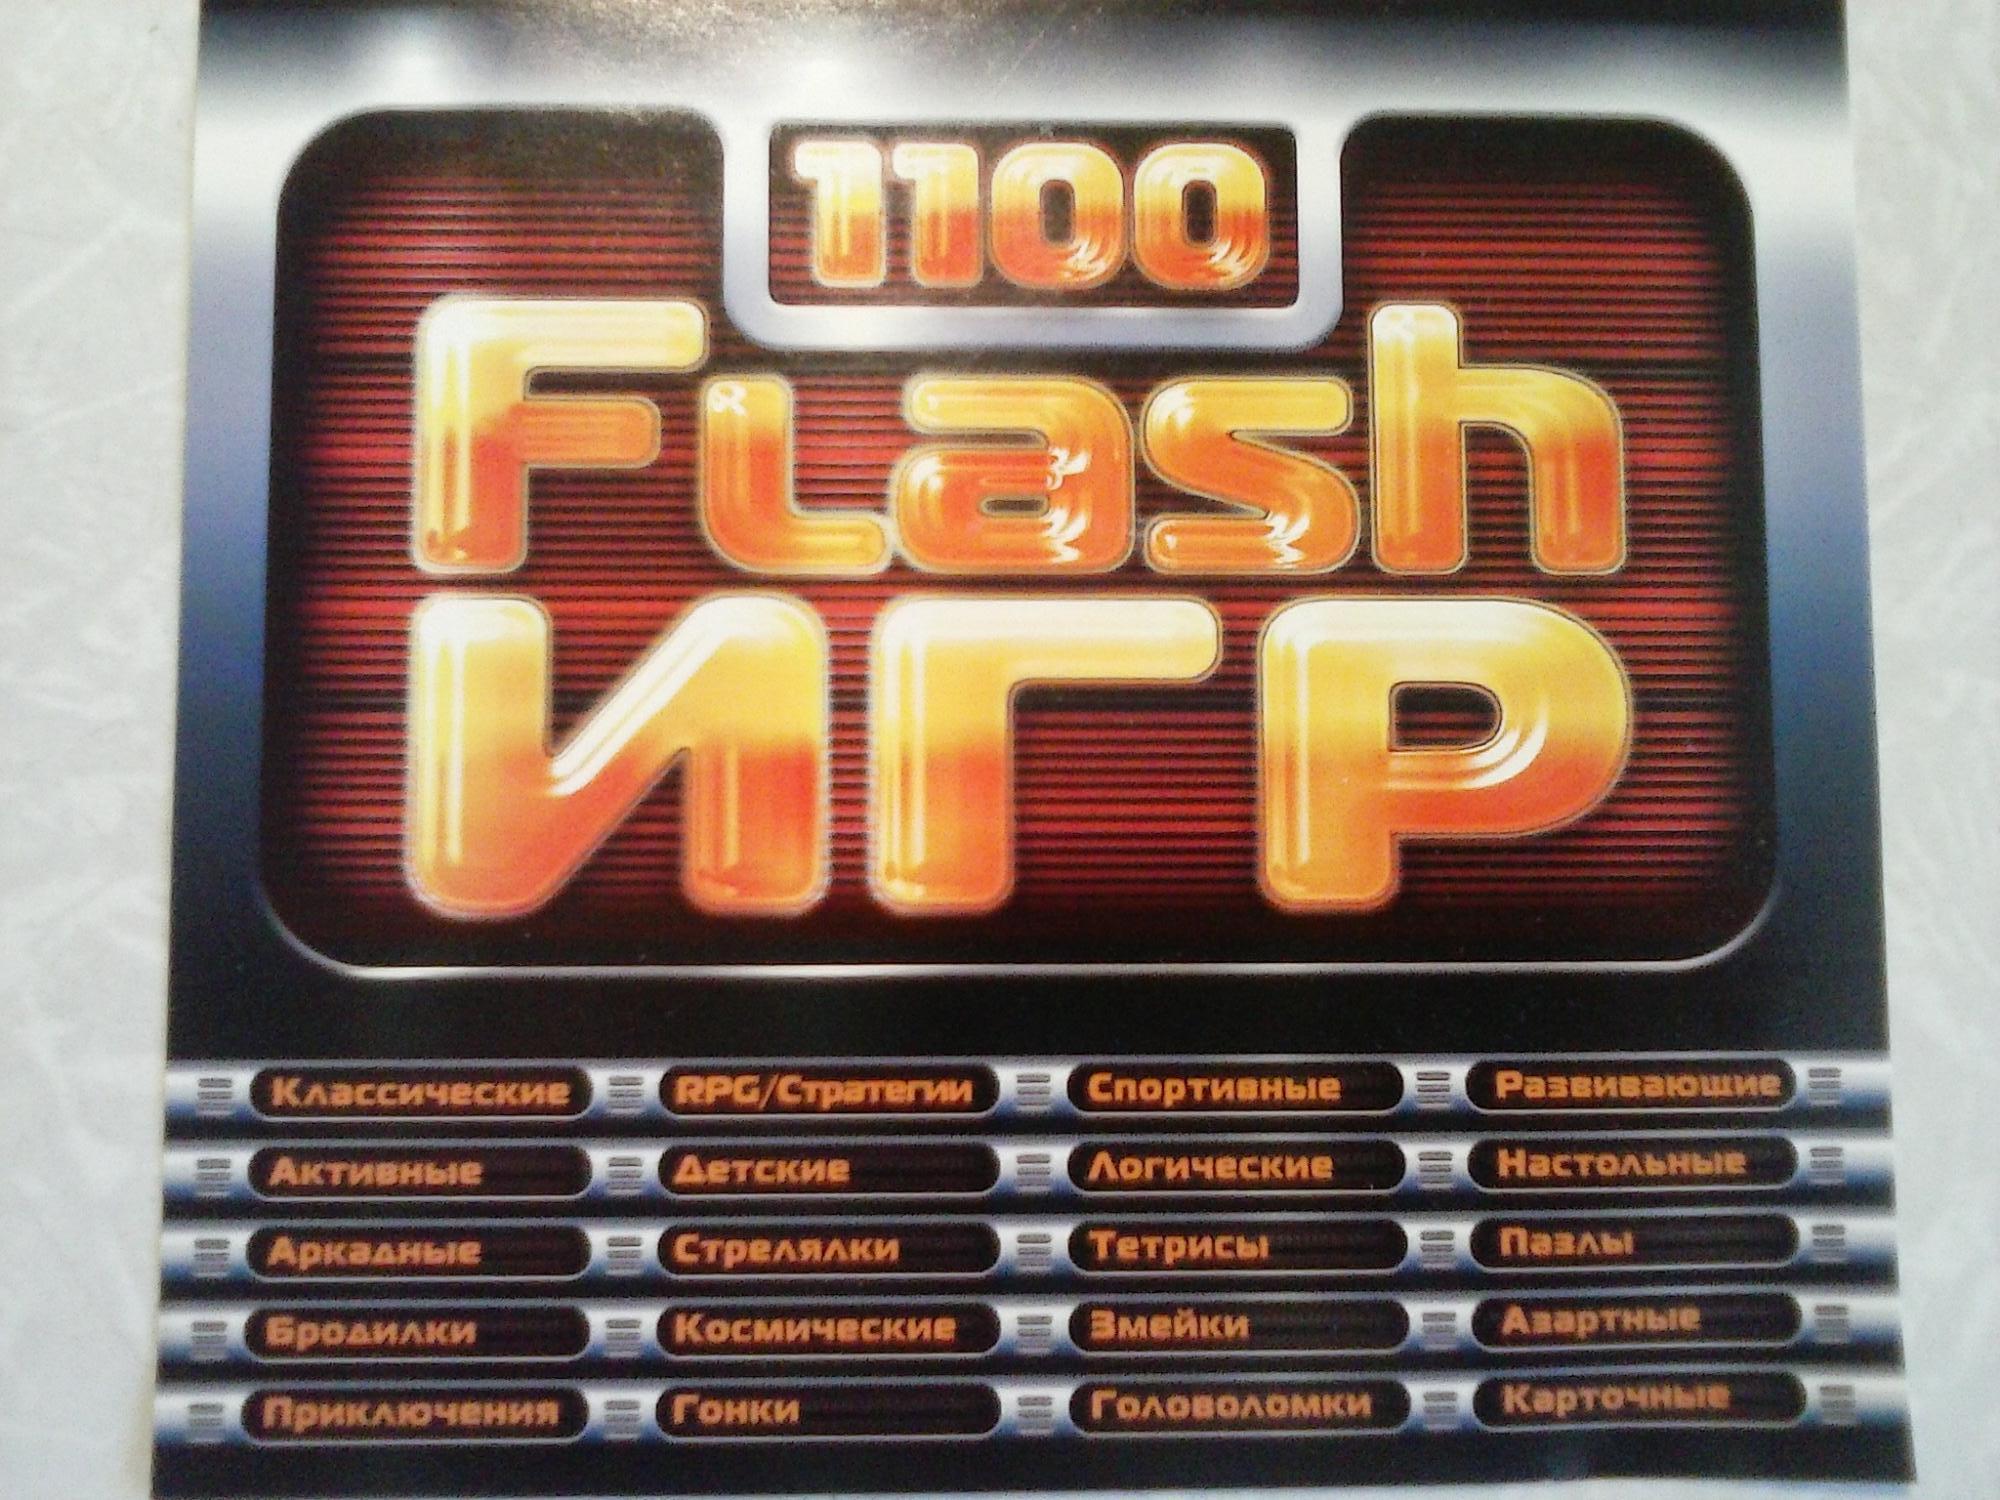 Flash игры 1. 1100 Flash игр. Диск 1100 флеш игр. Сборник Flash игр. 1100 Флеш игр 2006.